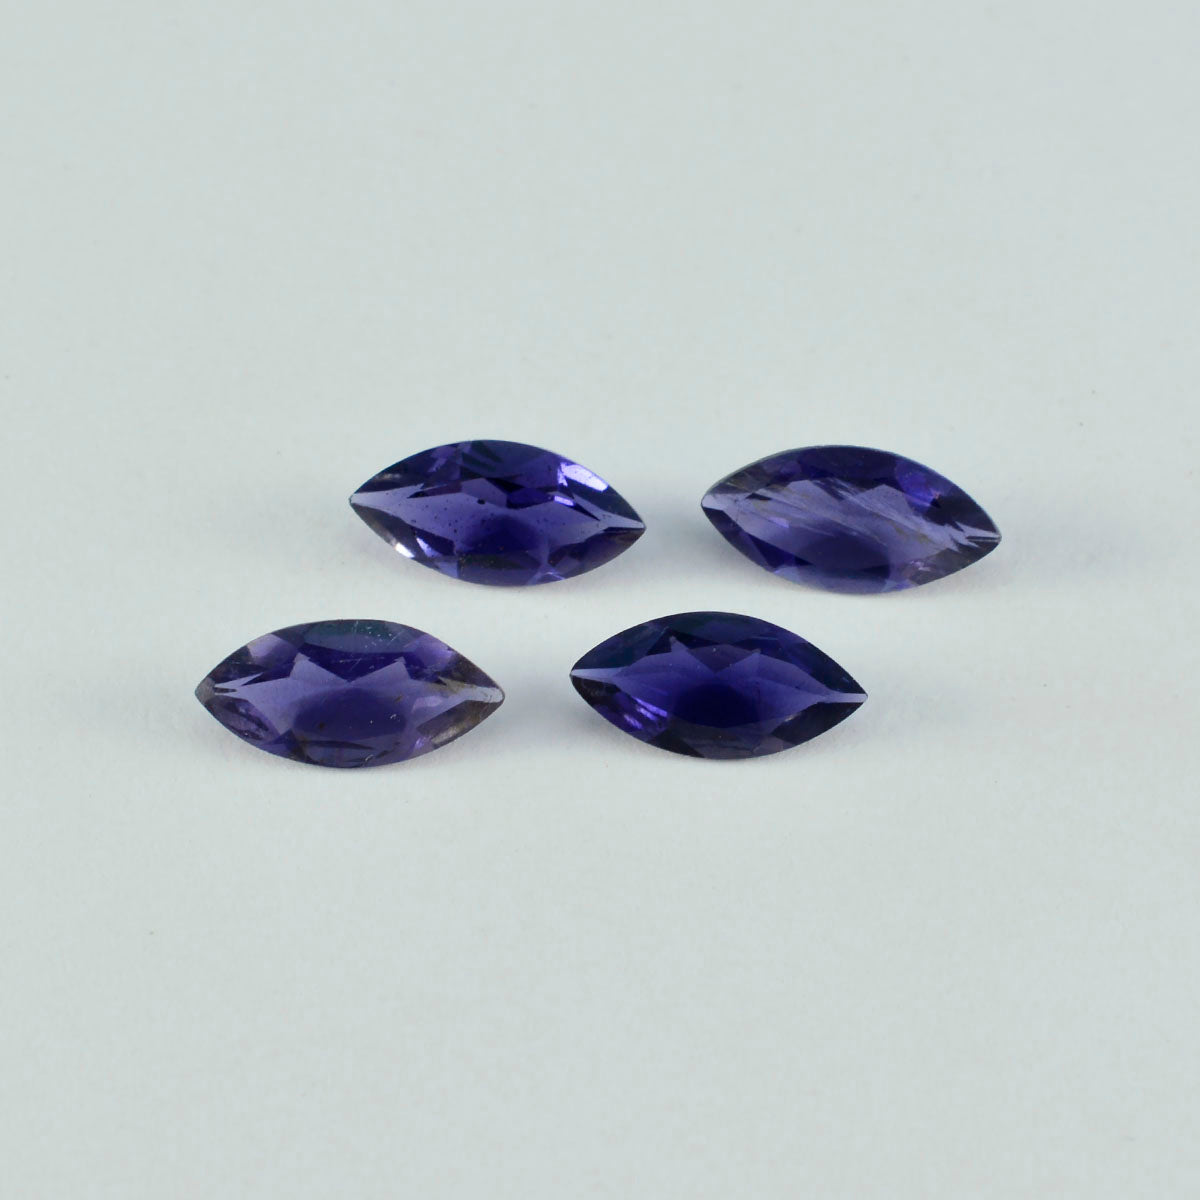 Riyogems 1pc iolite bleue à facettes 10x20mm forme marquise superbe qualité pierre en vrac